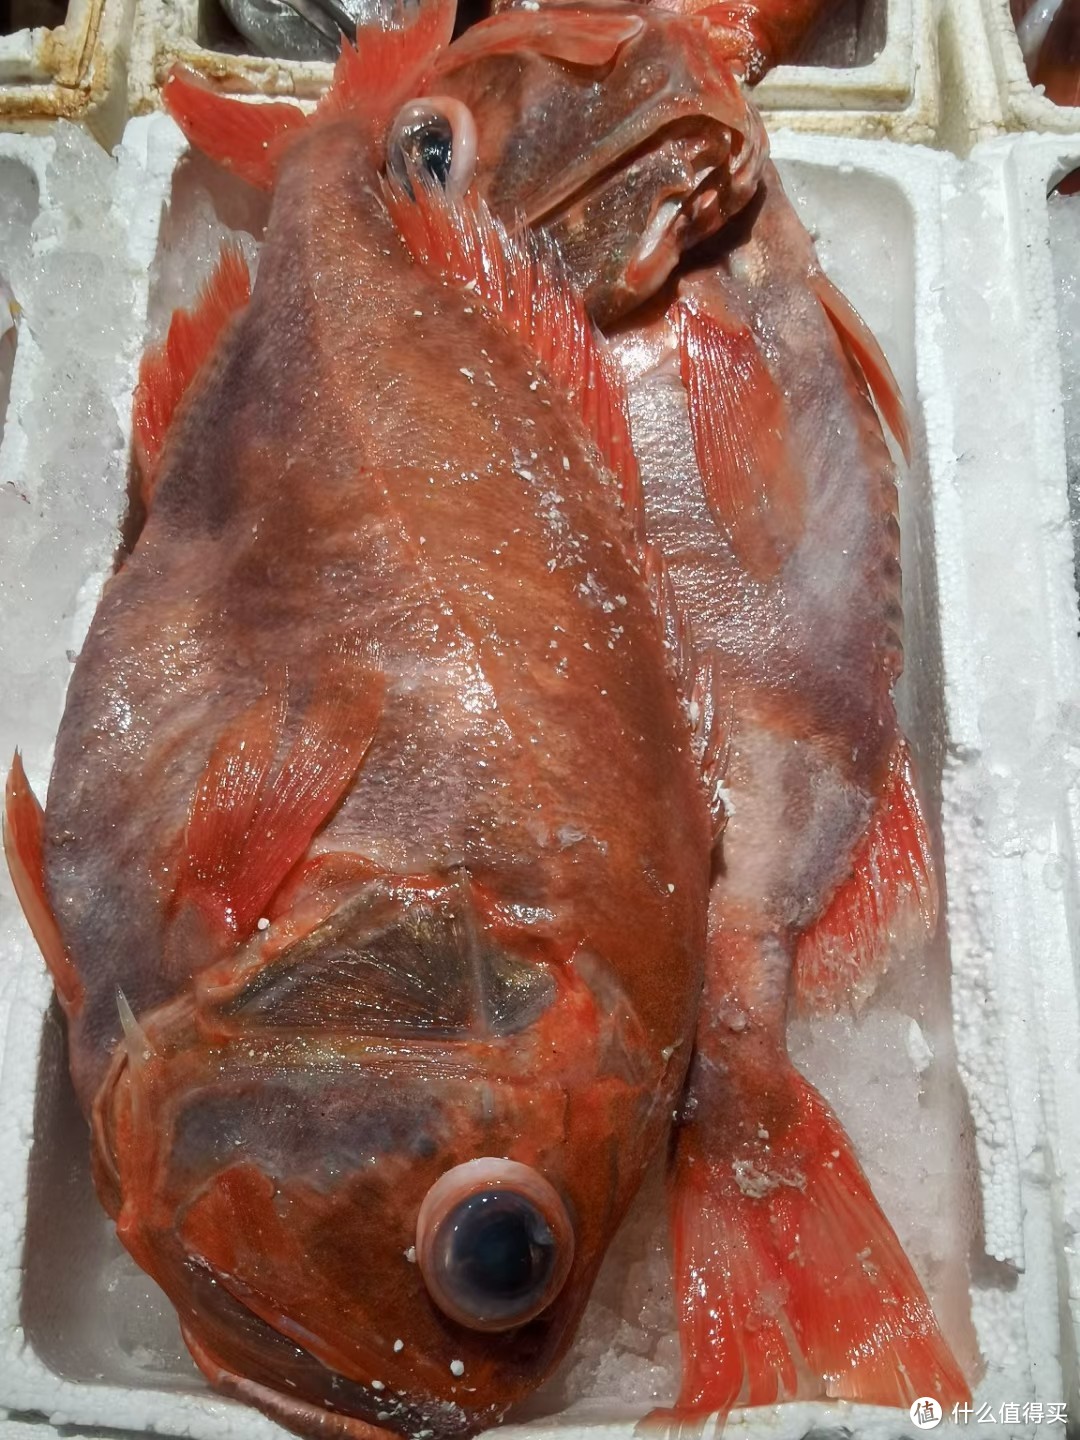 日料测评篇六橘棘鲷来自海洋的长寿鱼